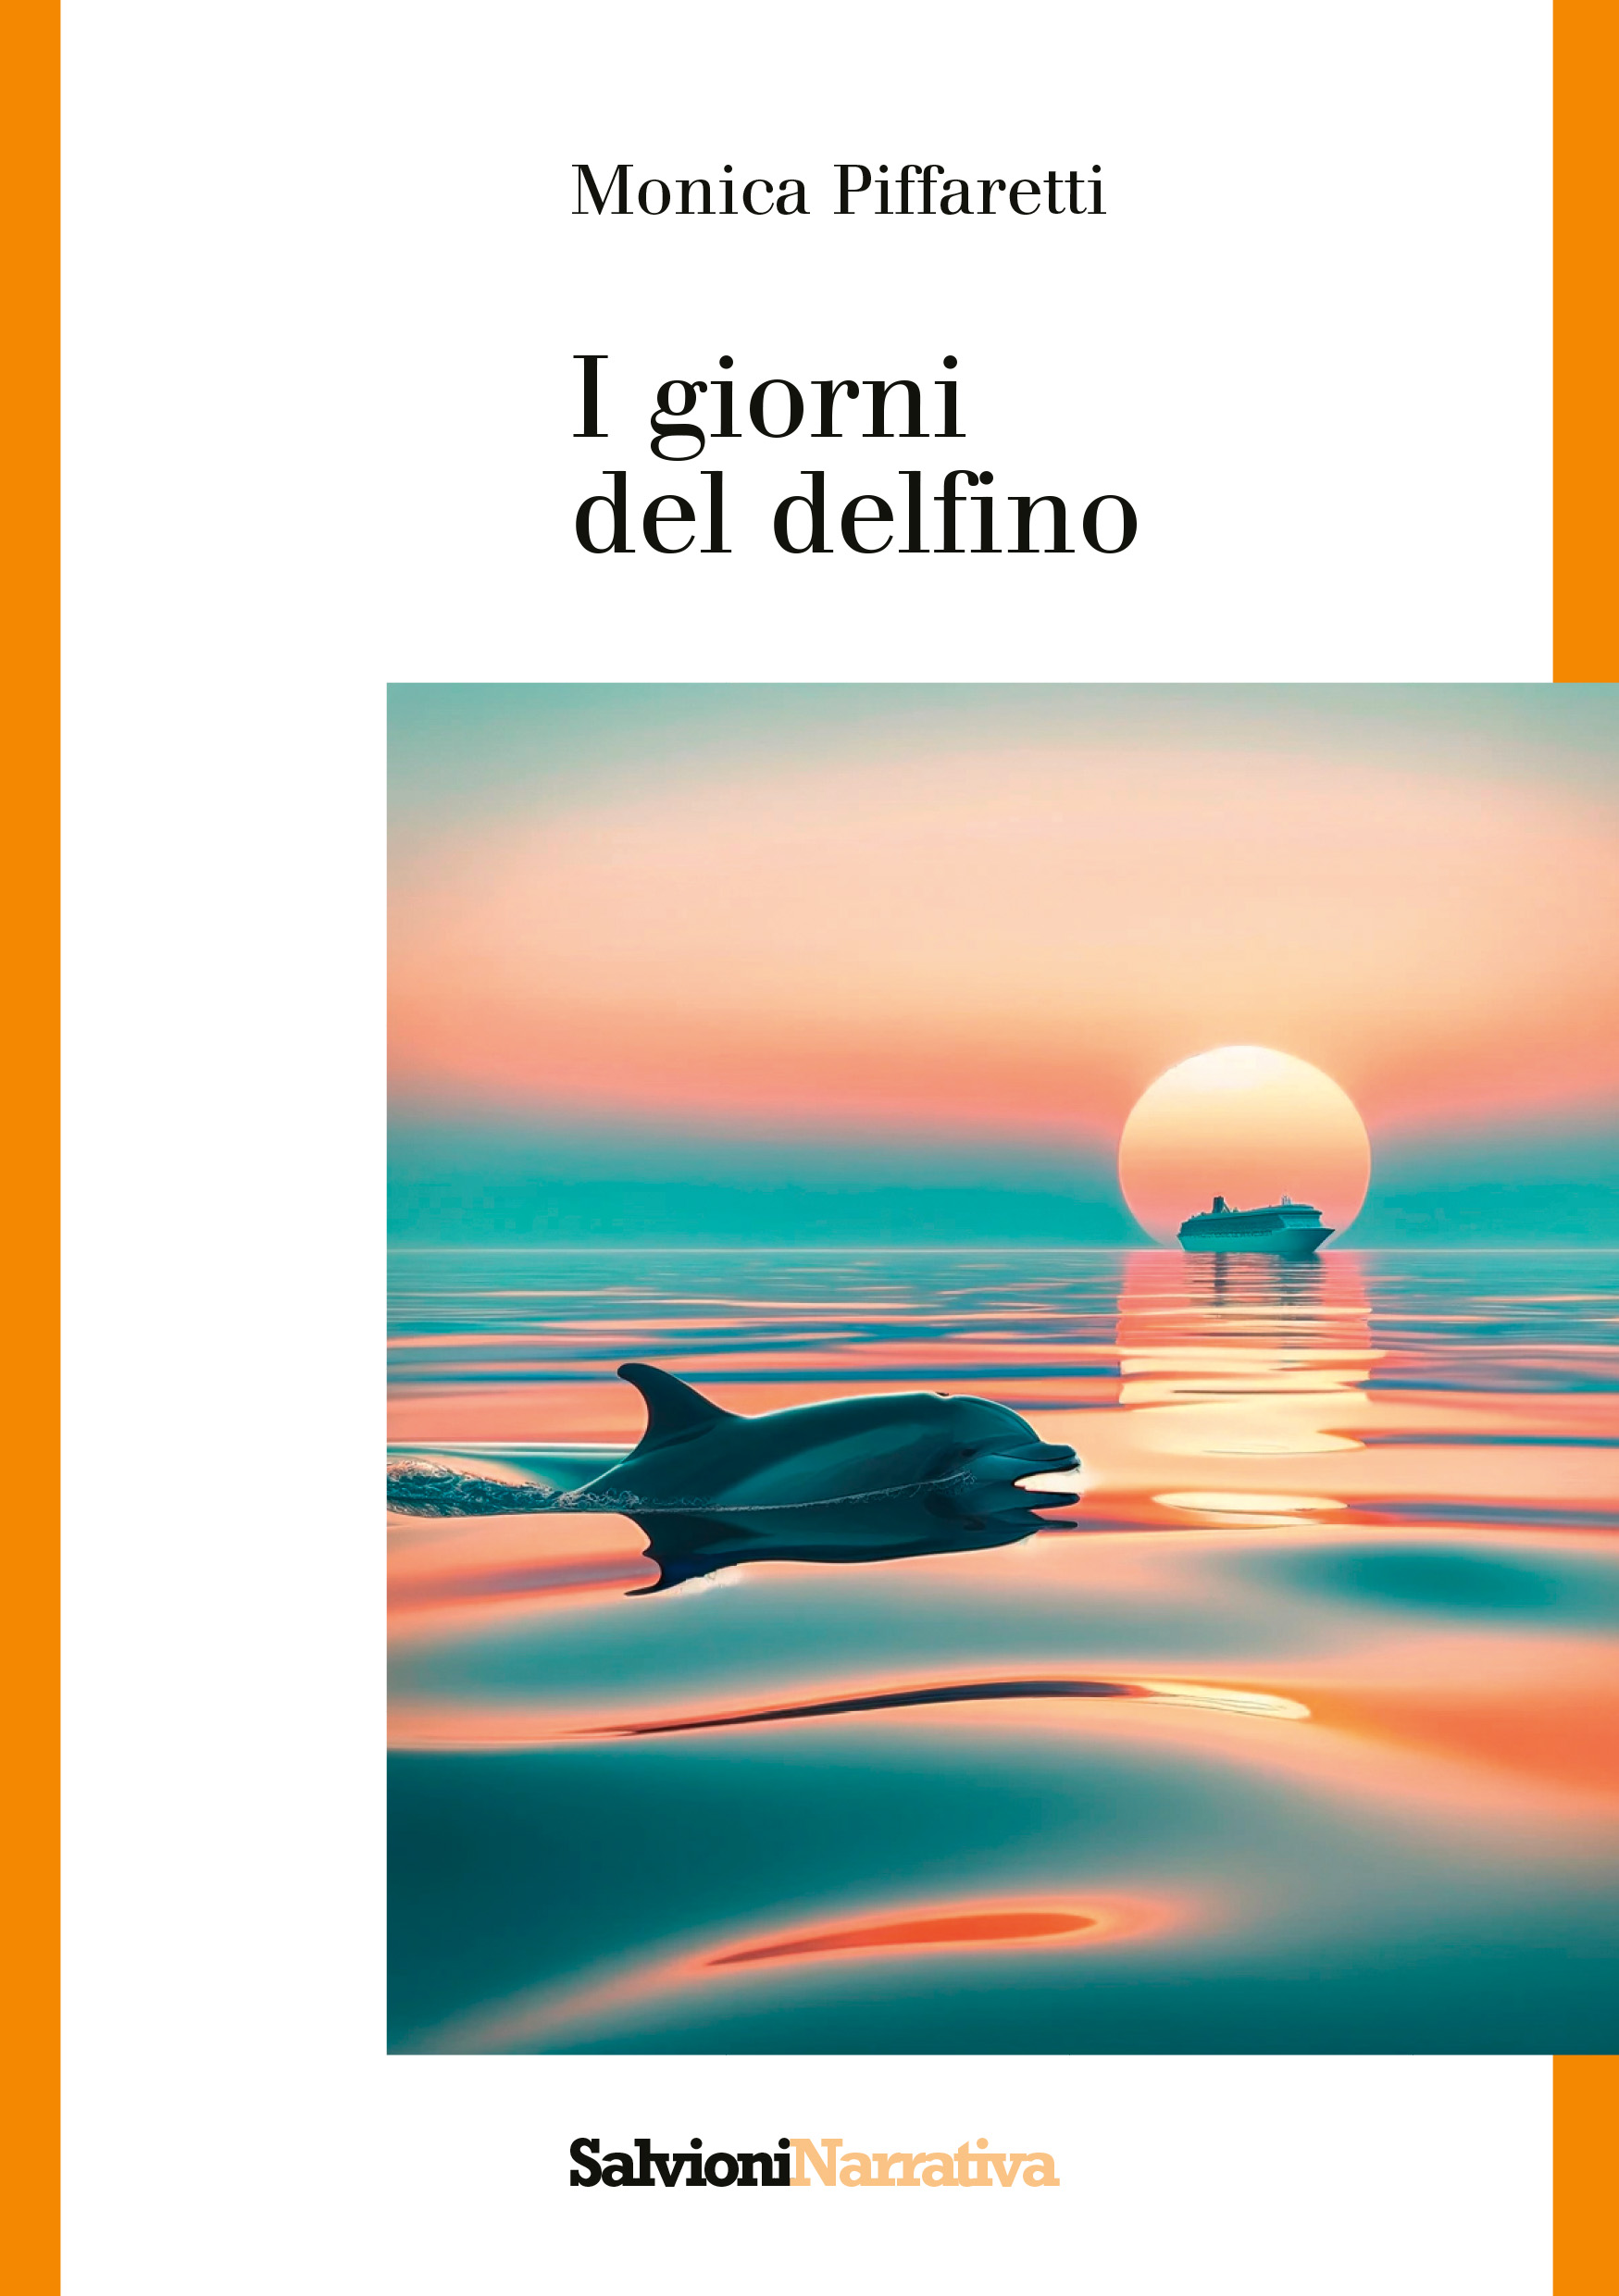 I giorni del delfino_Copertina_fronte_SITO_144dpi_RGB_1-1